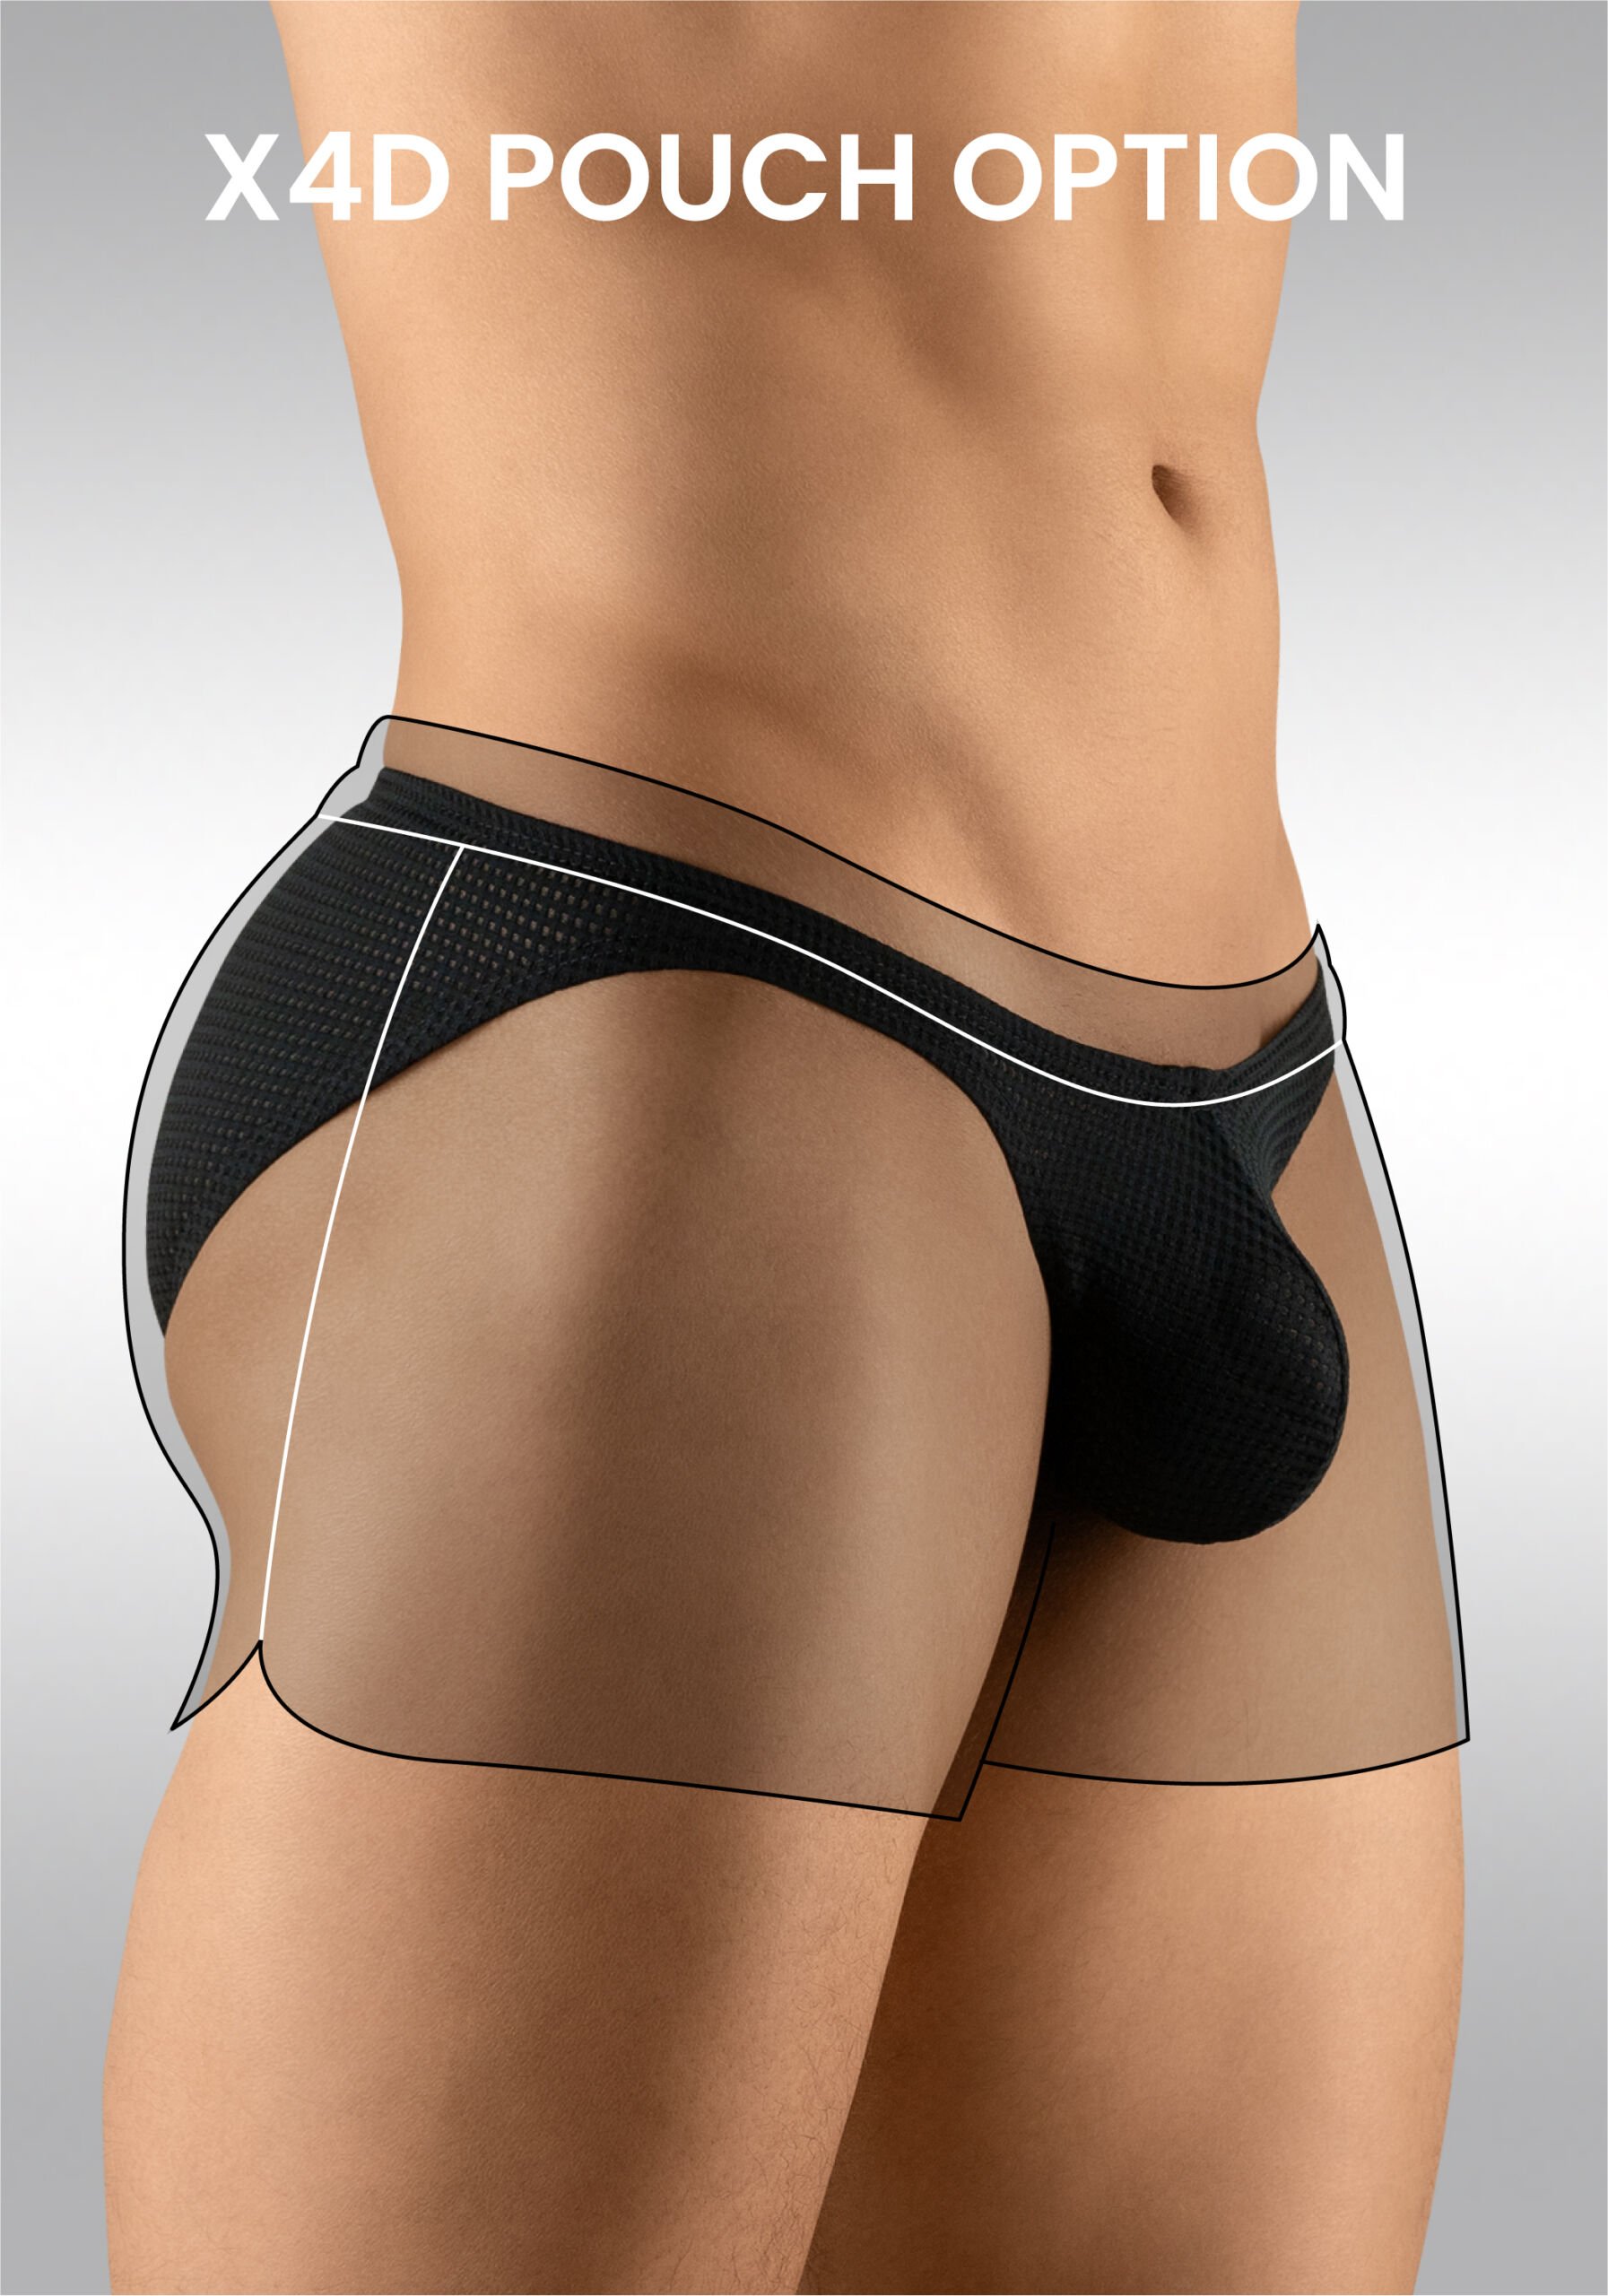 Men's Gym Short Black X4D Option - Ergowear